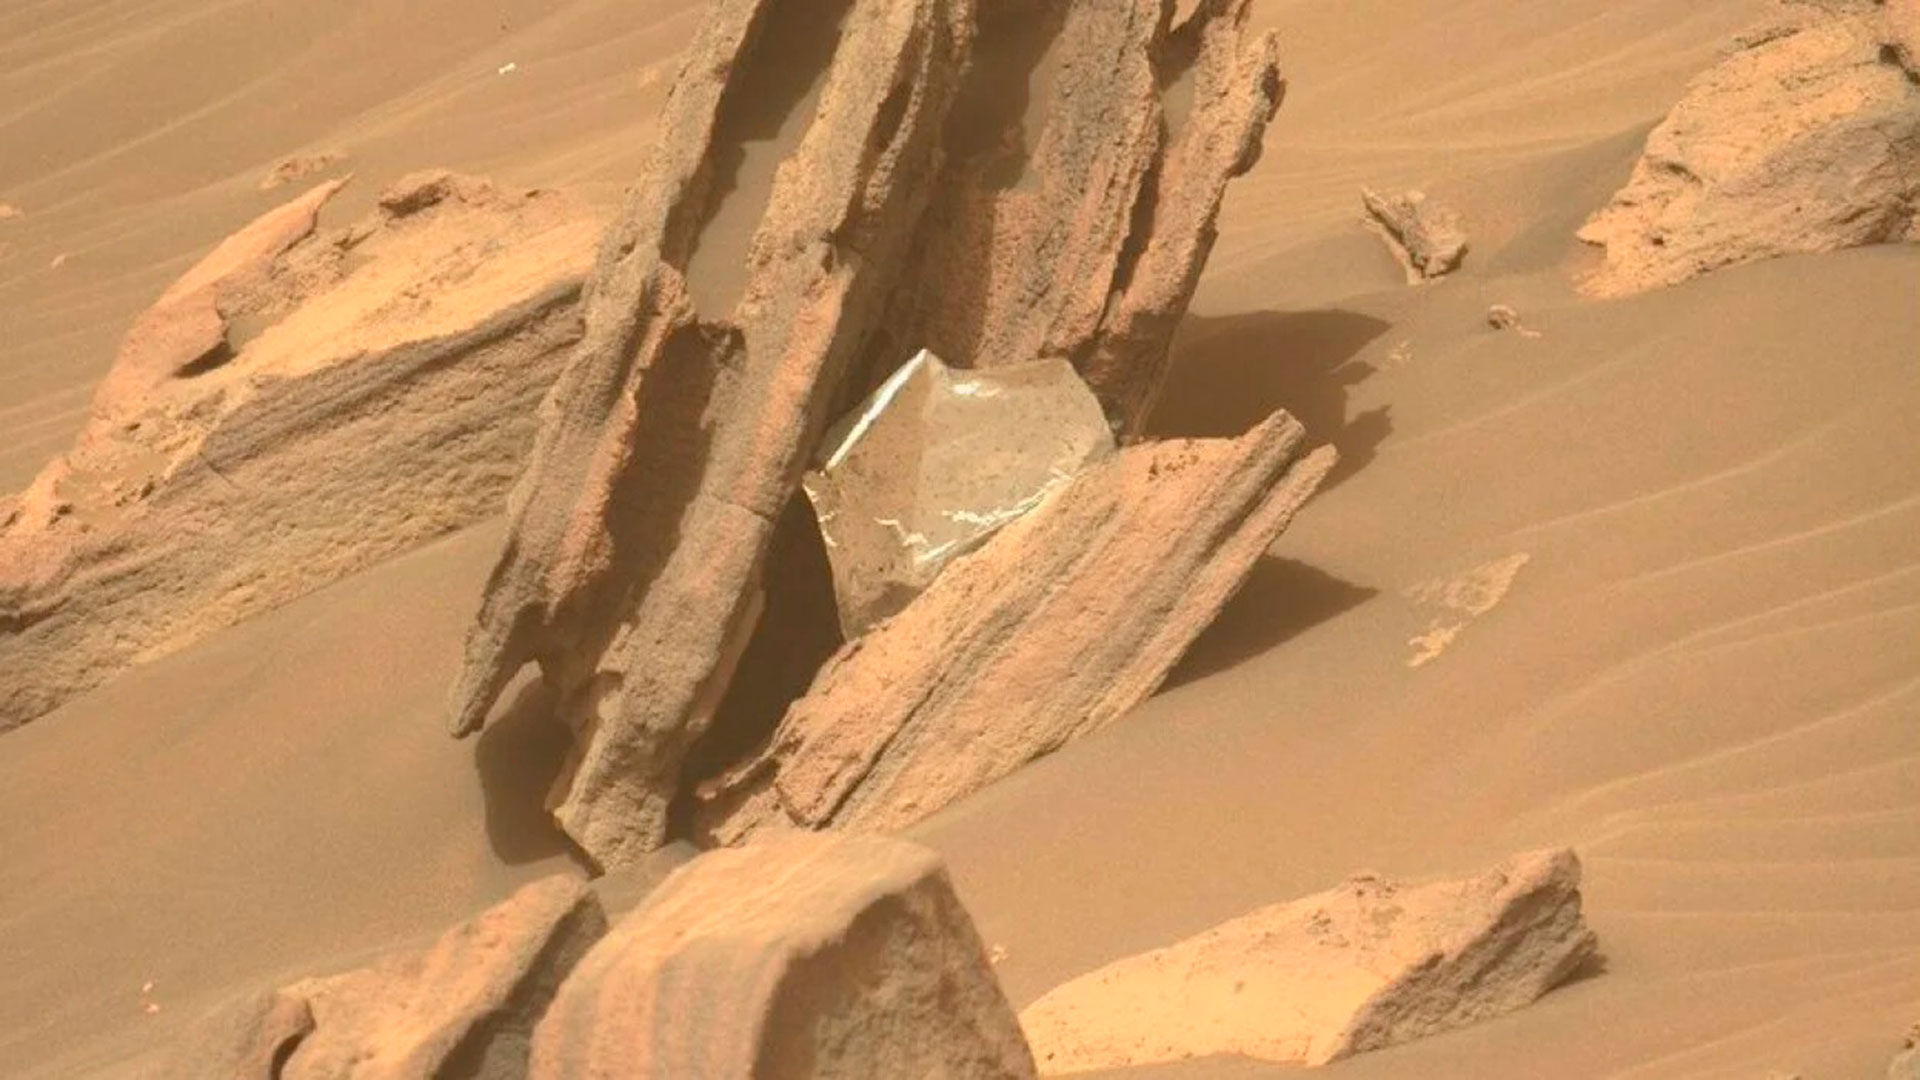 El rover llegó a la base del delta en abril. Pronto detectó rocas grises de capas delgadas llamadas lutitas, que podrían haberse formado a partir de sedimentos depositados por un río o lago lento